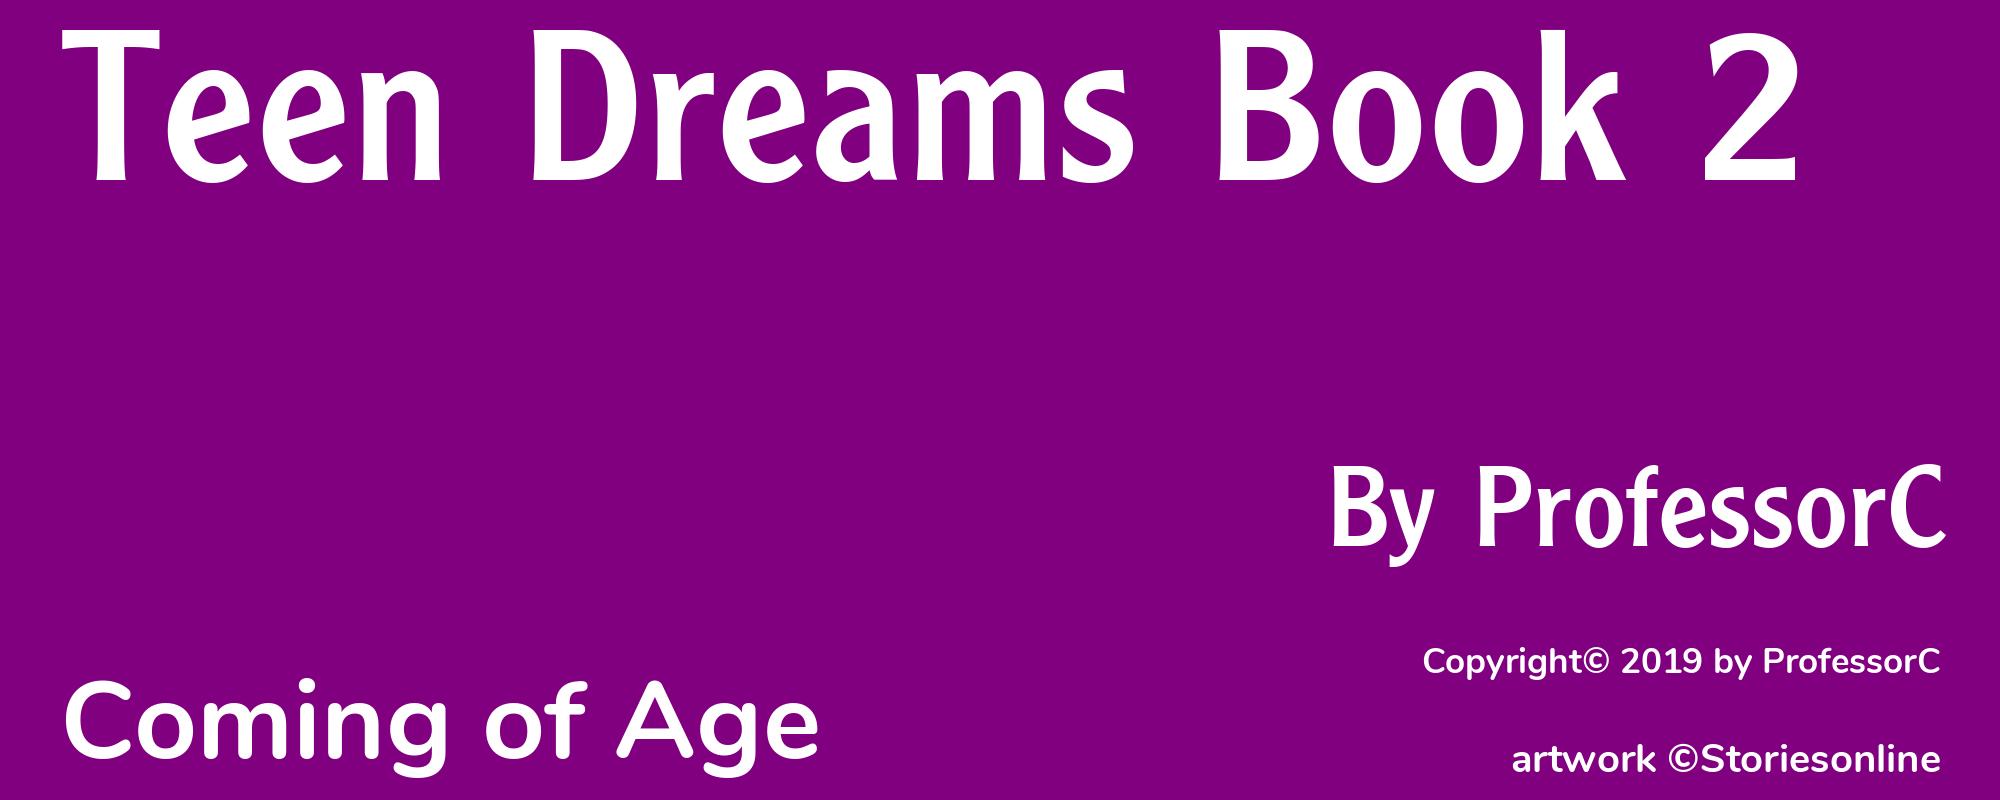 Teen Dreams Book 2 - Cover